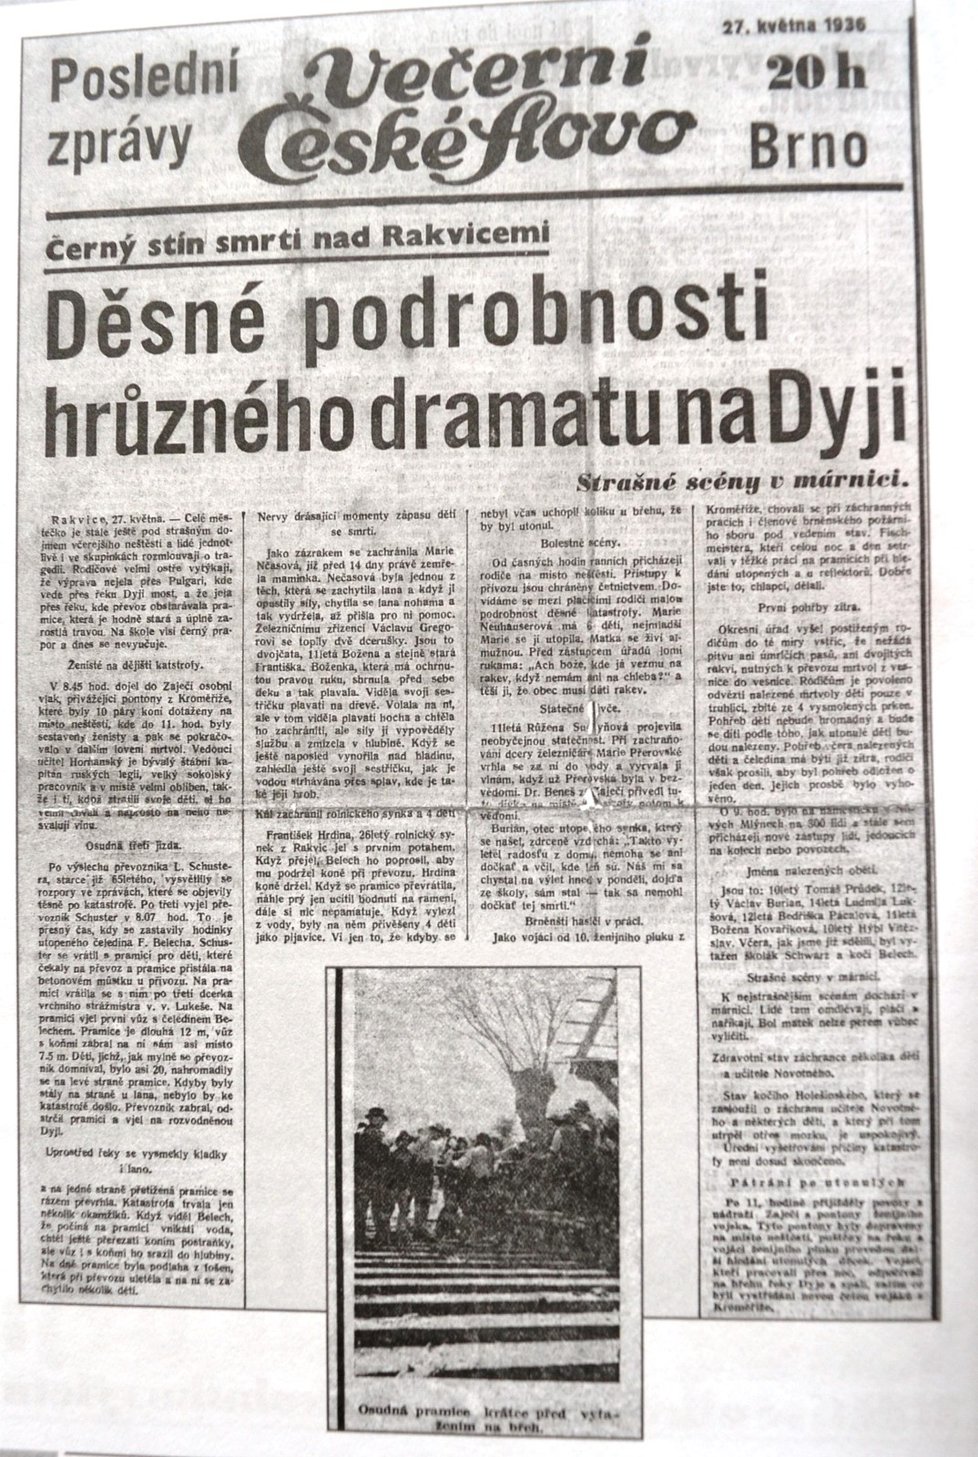 O rakvické tragédii referovaly na jaře 1936 obšírně všechny noviny. Parlament dokonce přerušil rozpravu, aby vyjádřil rodinám soustrast.